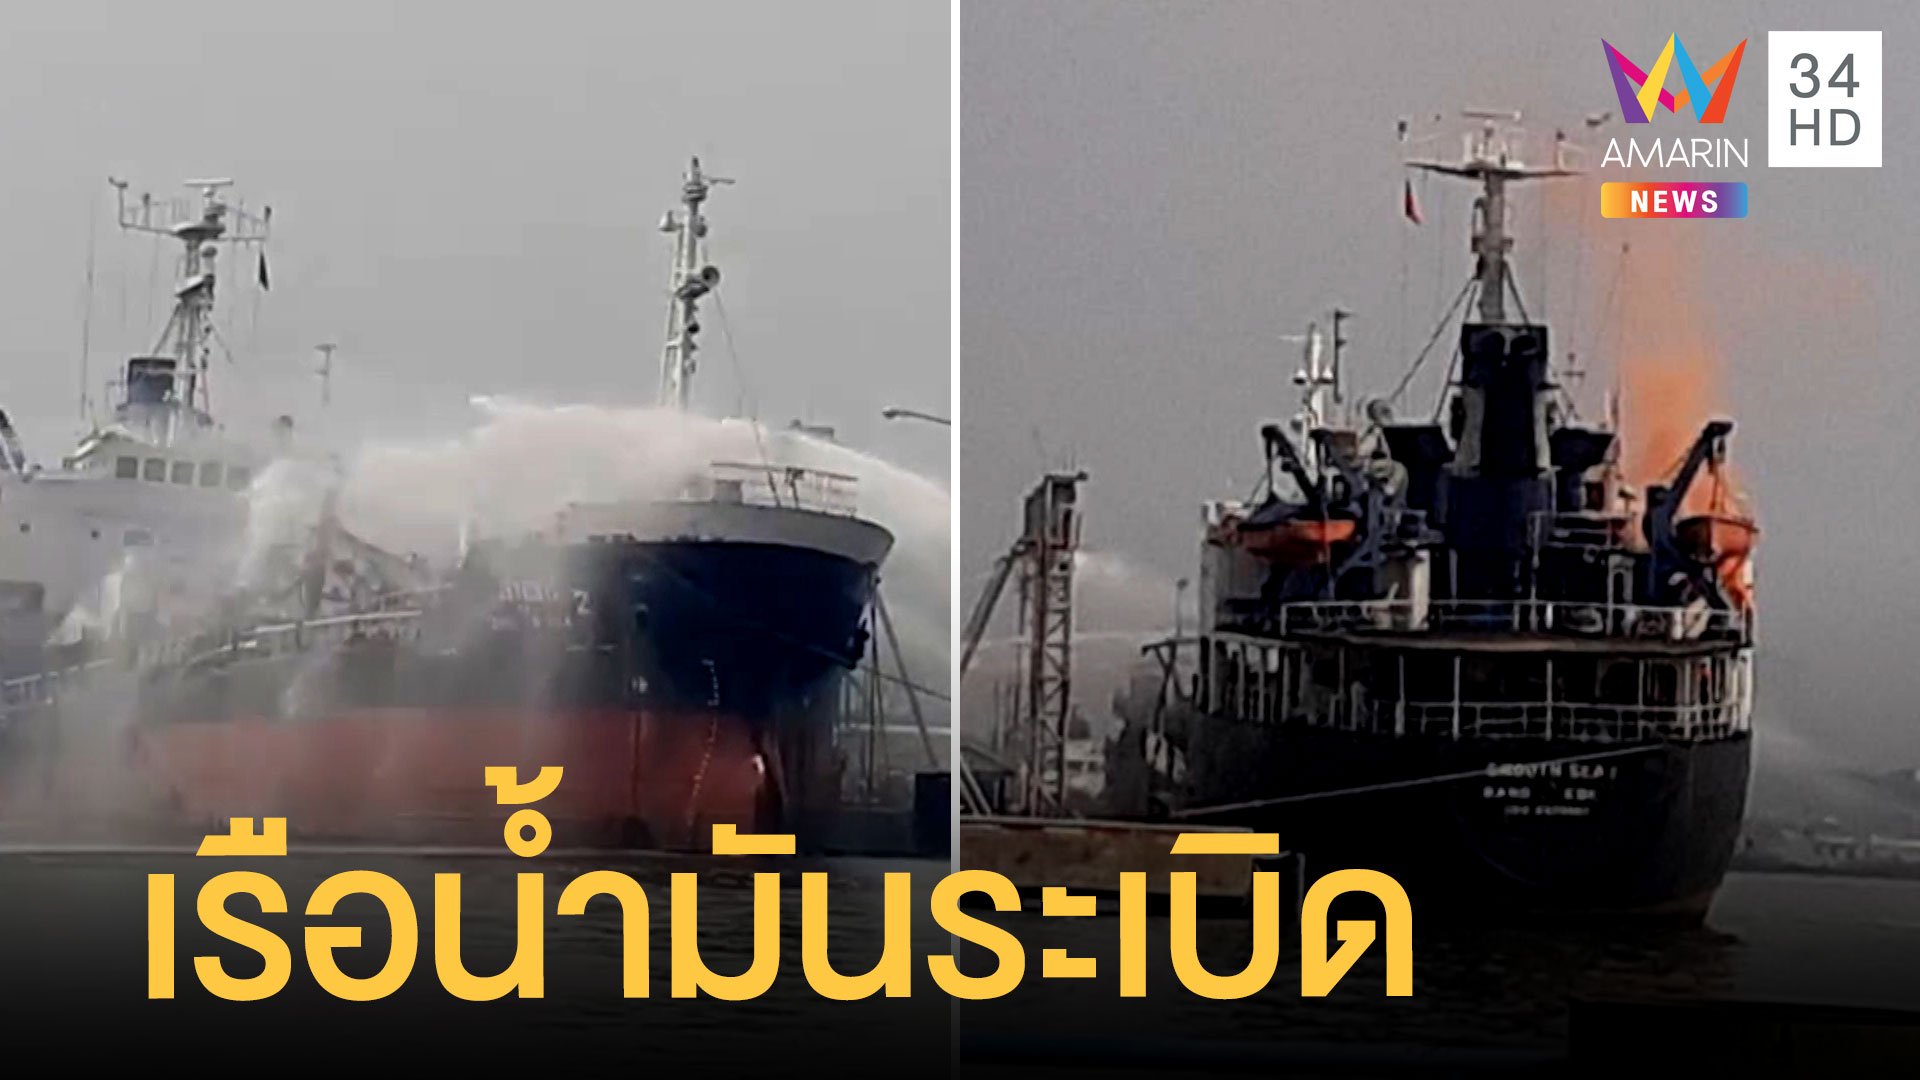 เรือบรรทุกน้ำมันระเบิด กลางท่าเรือย่านสุขสวัสดิ์ | ข่าวเที่ยงอมรินทร์ | 9 มี.ค. 65 | AMARIN TVHD34